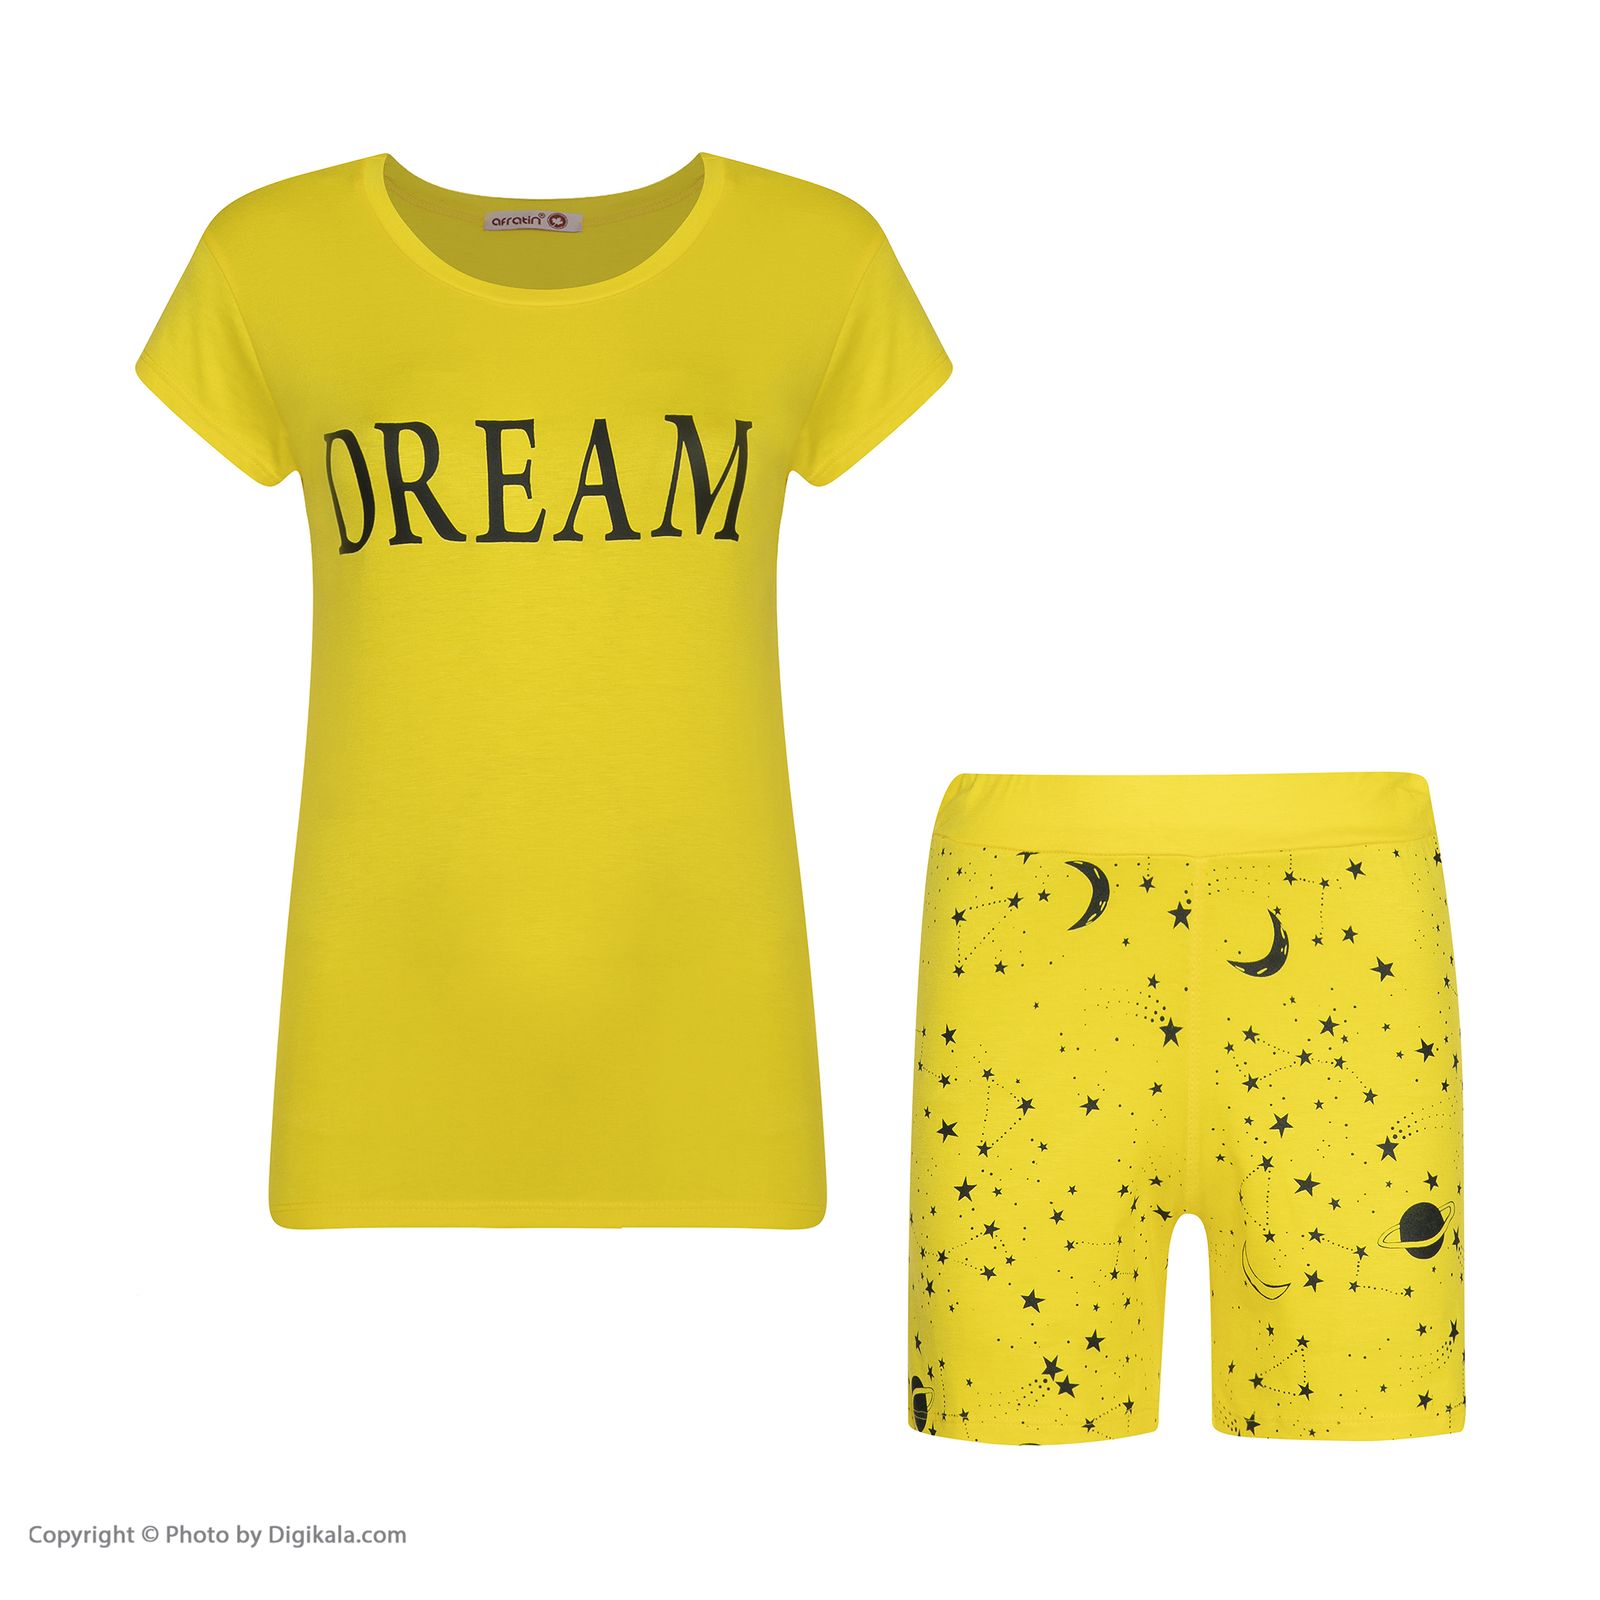 ست تی شرت و شلوارک زنانه افراتین مدل Dream کد 6558 رنگ زرد -  - 2